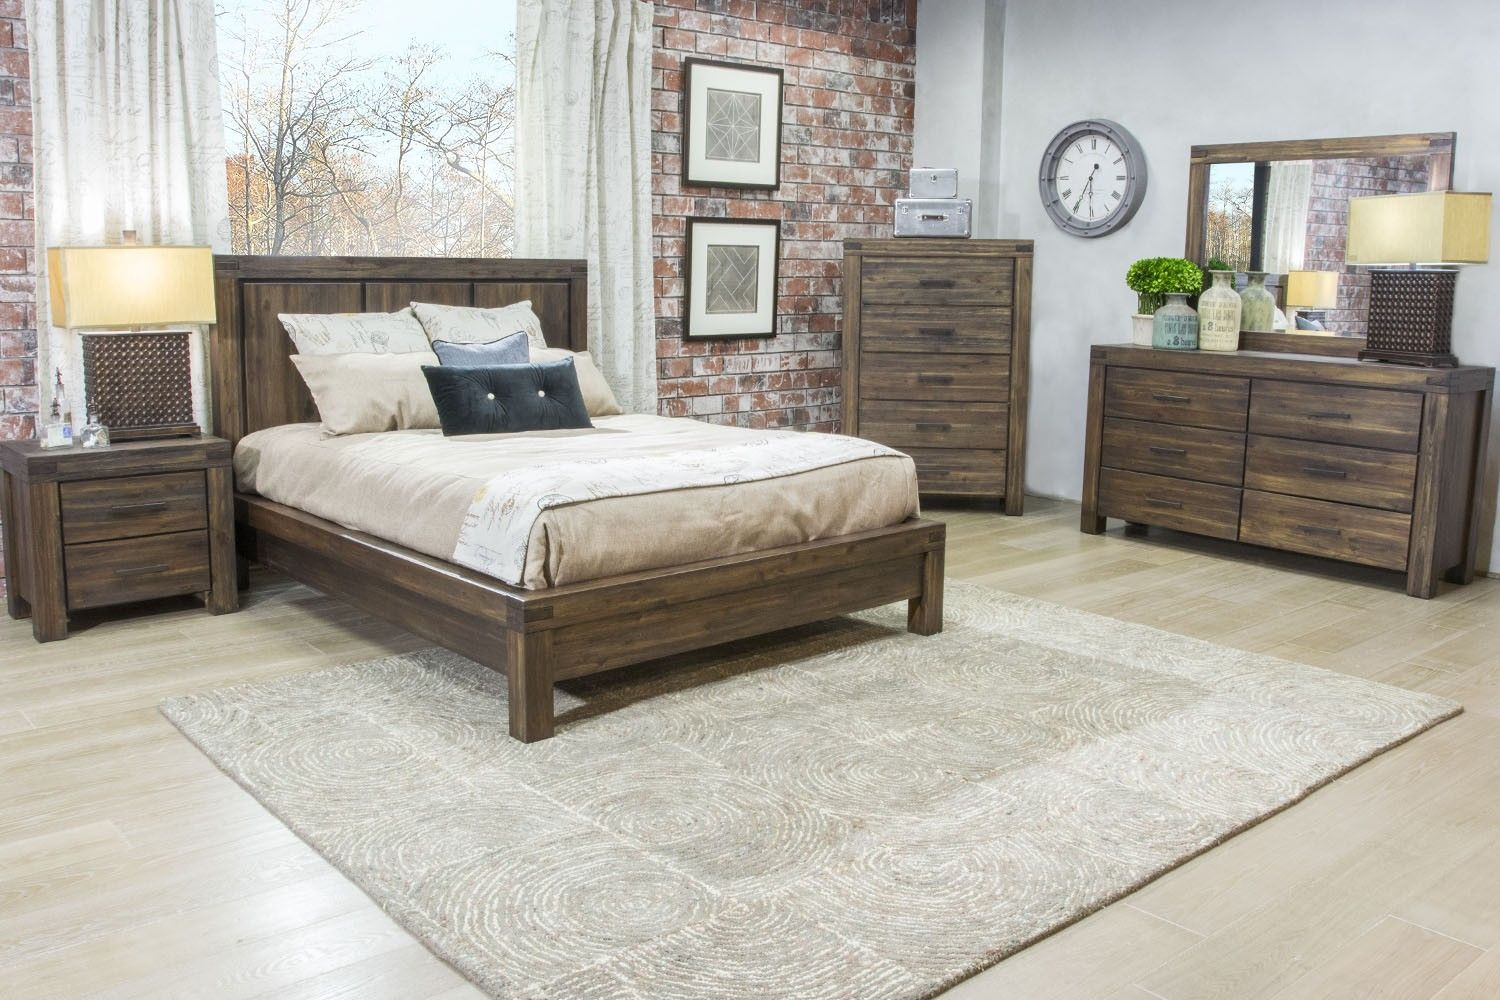 mor furniture kensington bedroom set